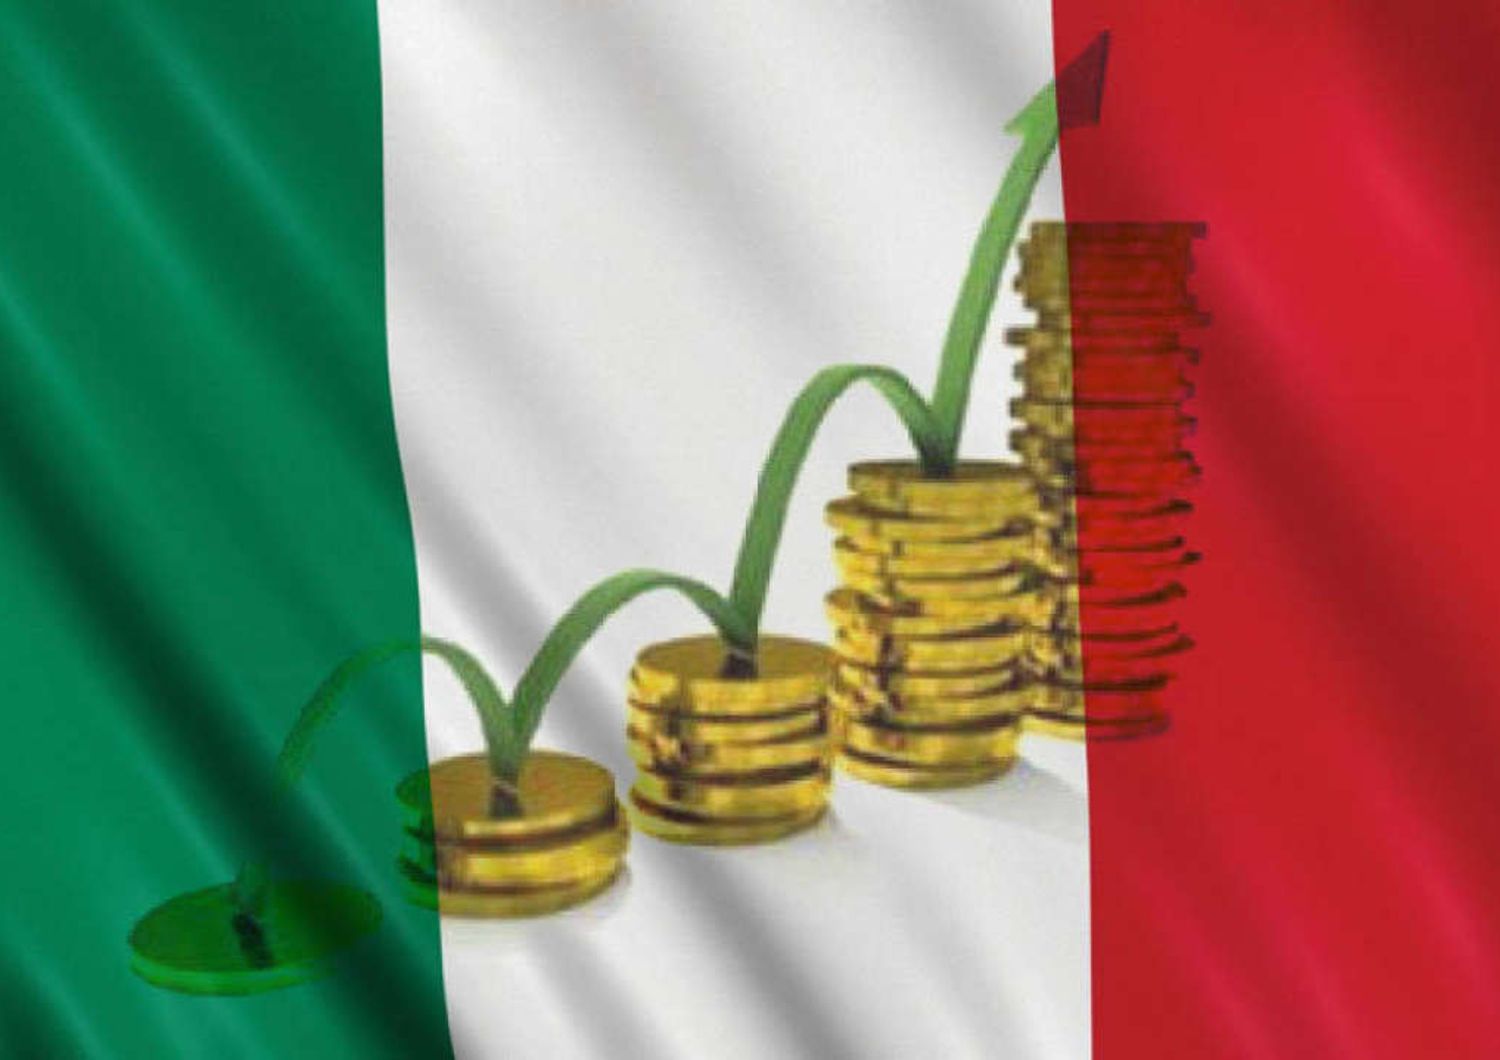 Italia torna a cresce  Pil positivo dopo 3 anni